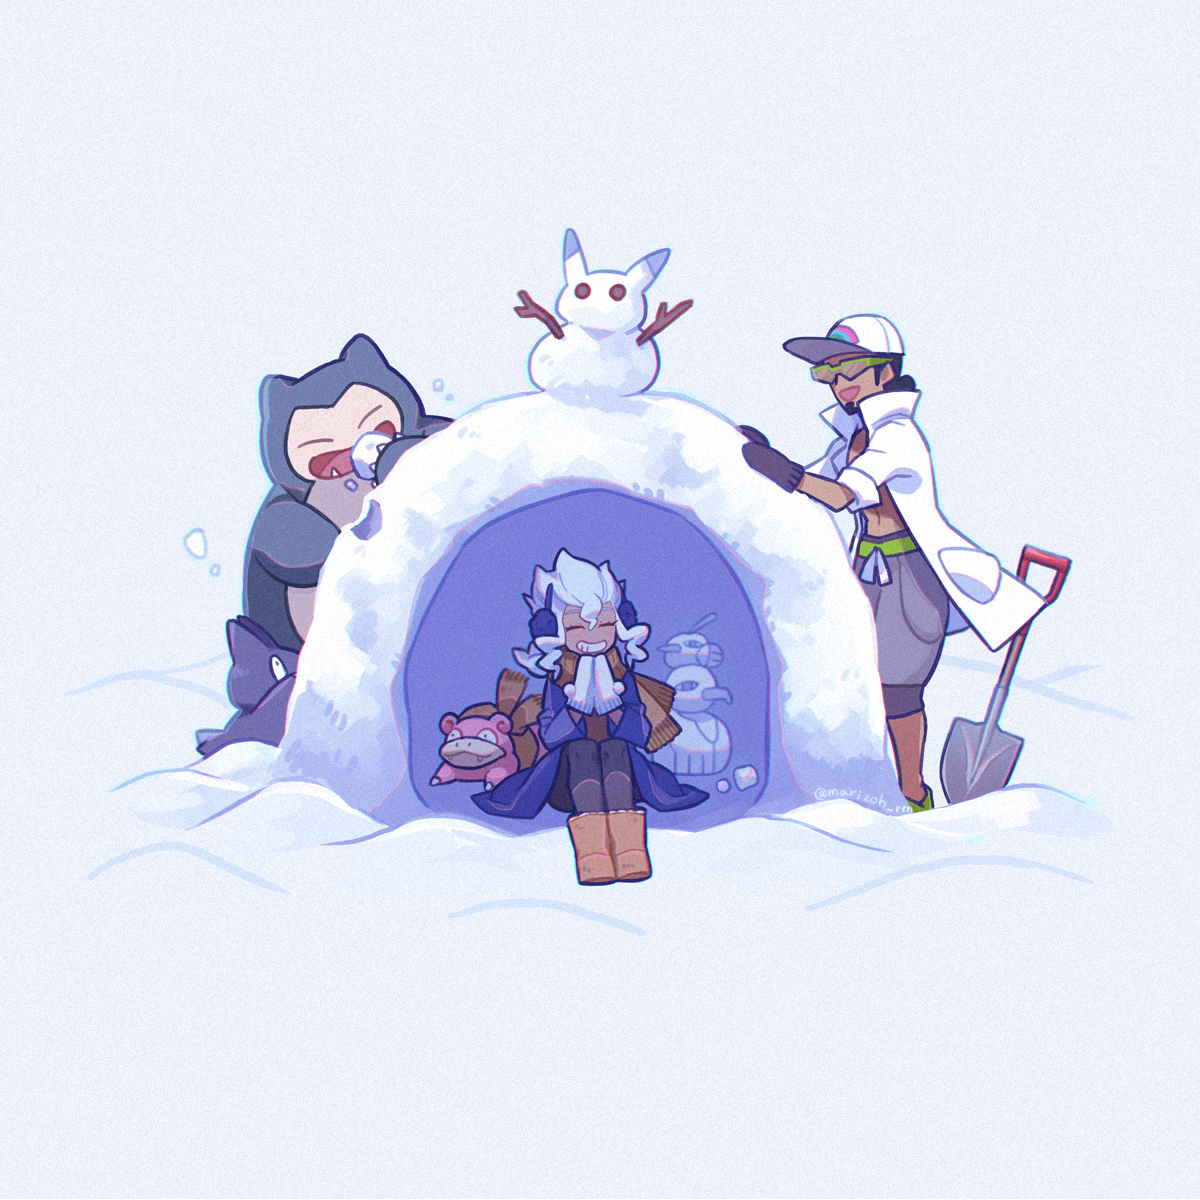 snowman shovel pokemon (creature) sitting gloves hat dark-skinned male  illustration images